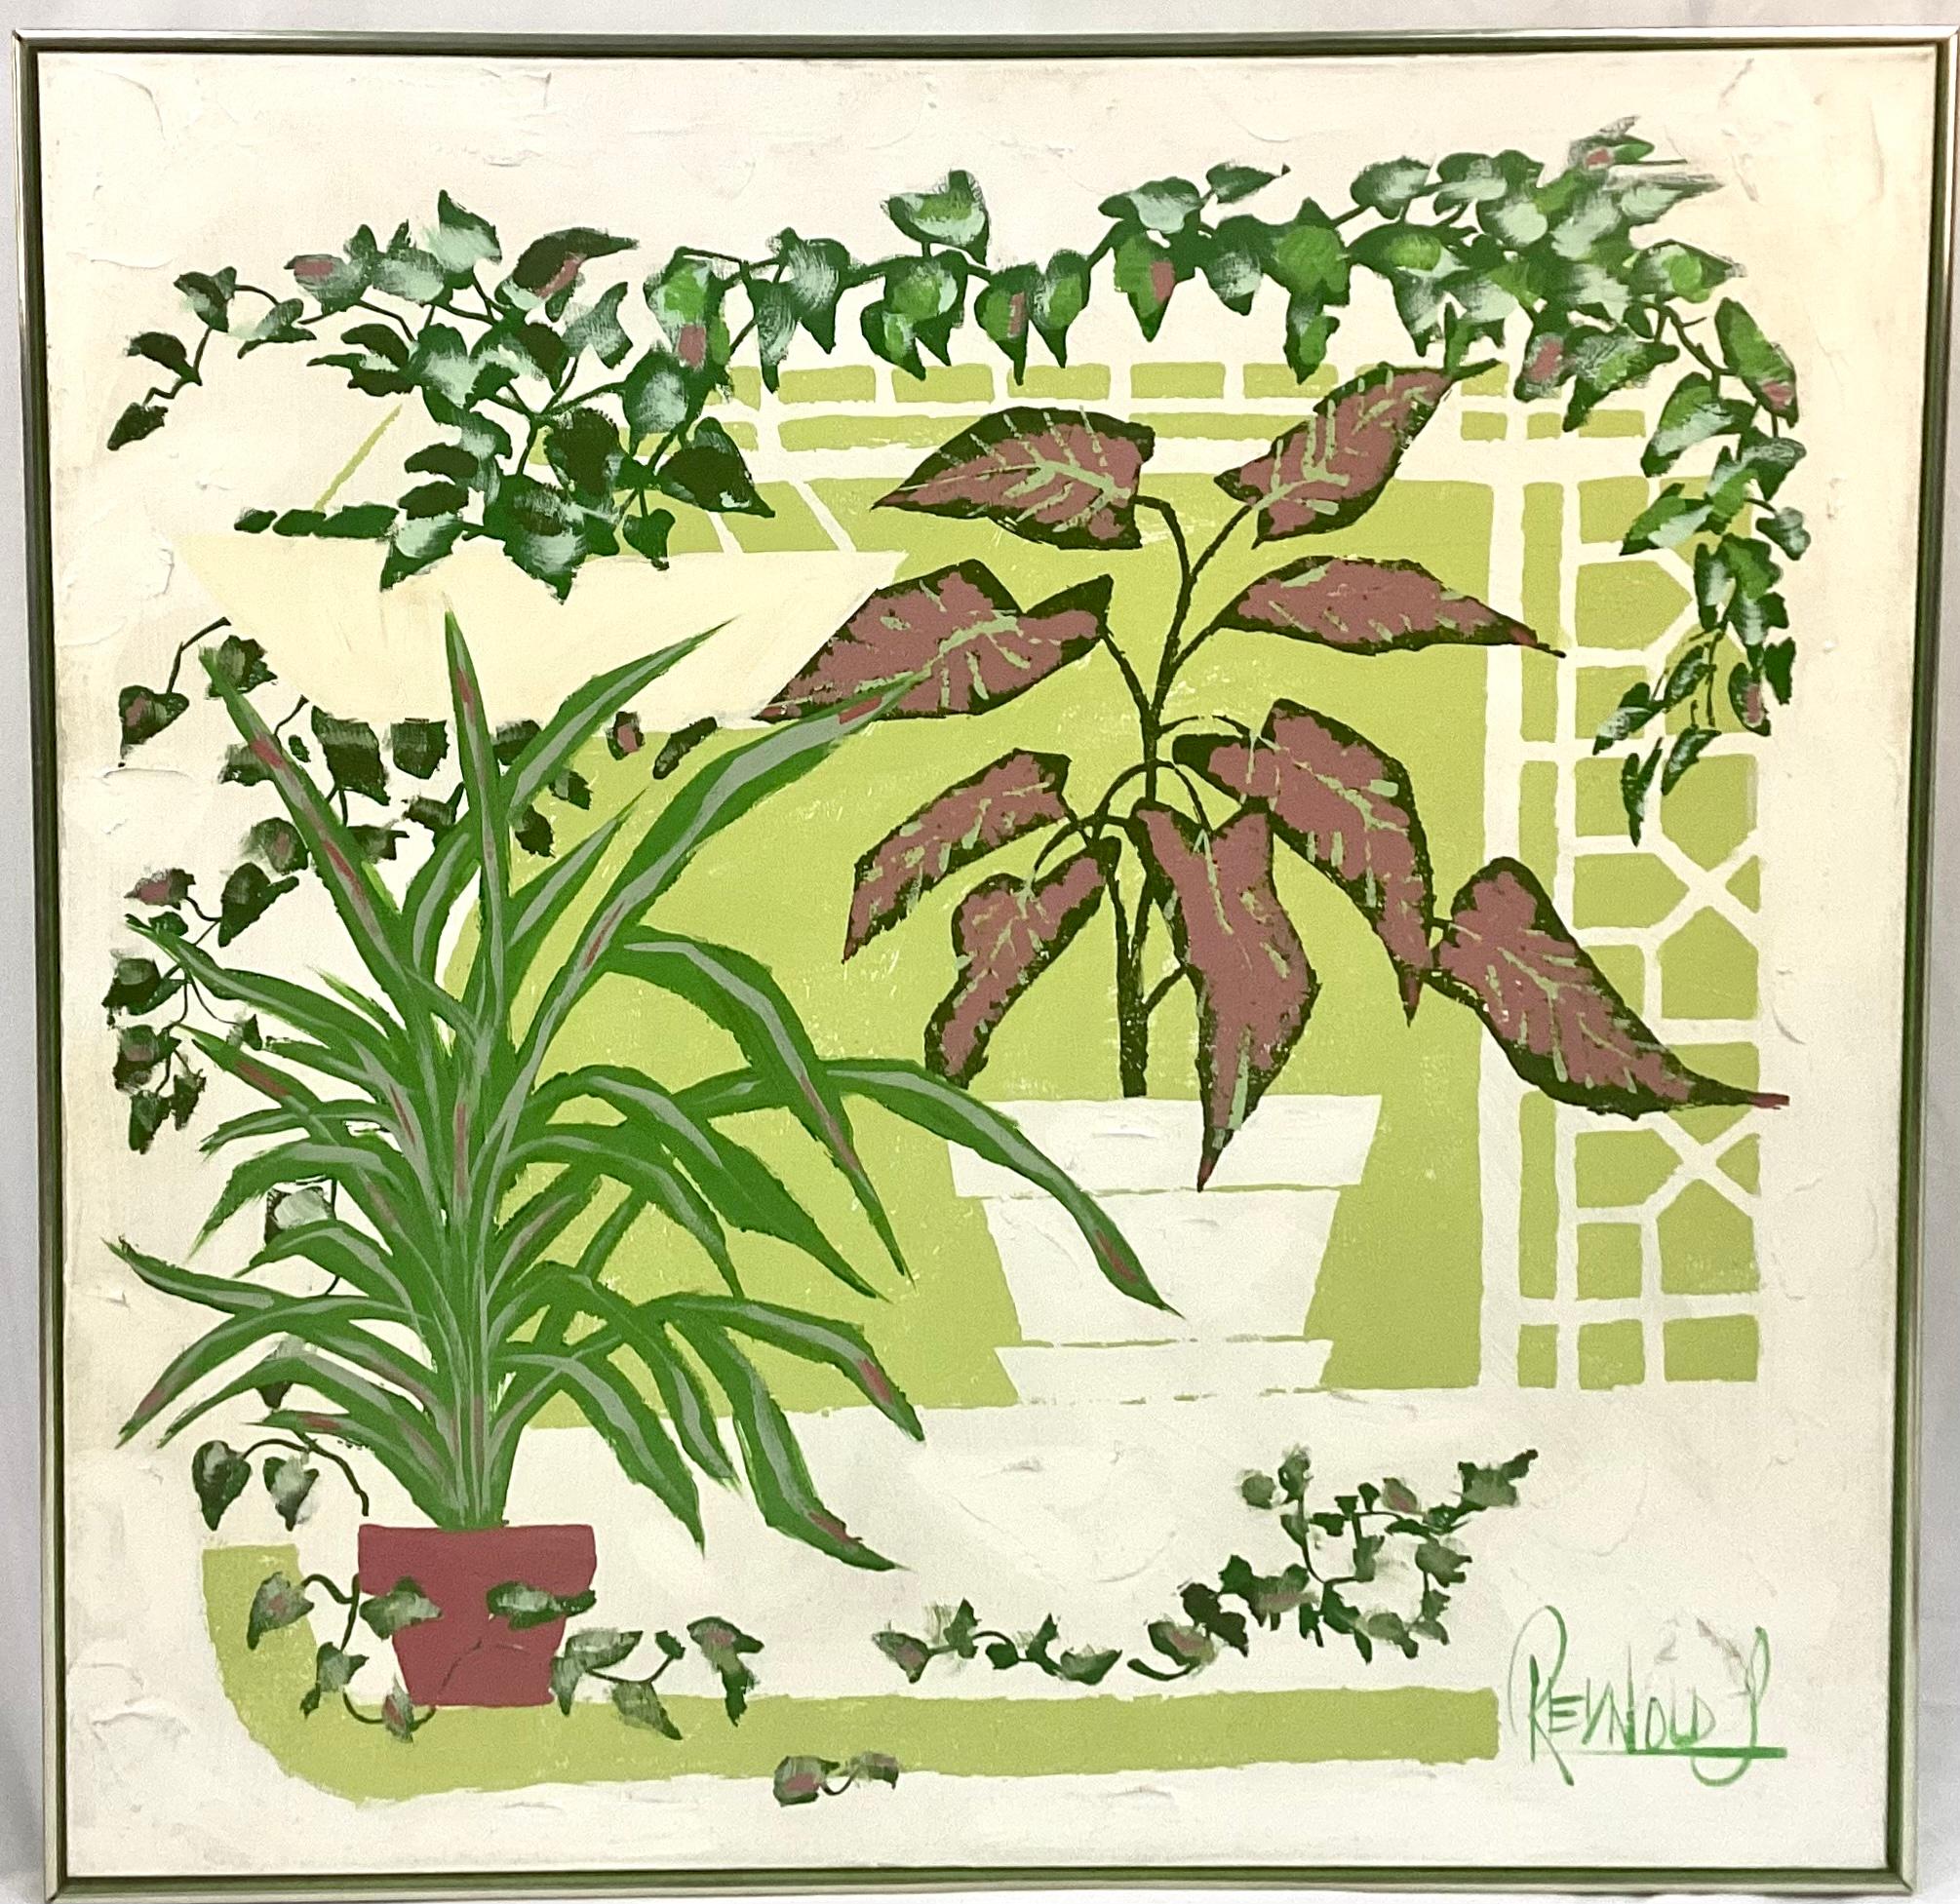 Grande peinture à l'huile vintage du Studio Vanguard de Lee Reynold datant des années 1960 ou 1970. Couleurs vives vertes, blanches et violettes des Coleus en pot et des feuilles de plantes. Elle serait parfaite dans n'importe quelle pièce, en